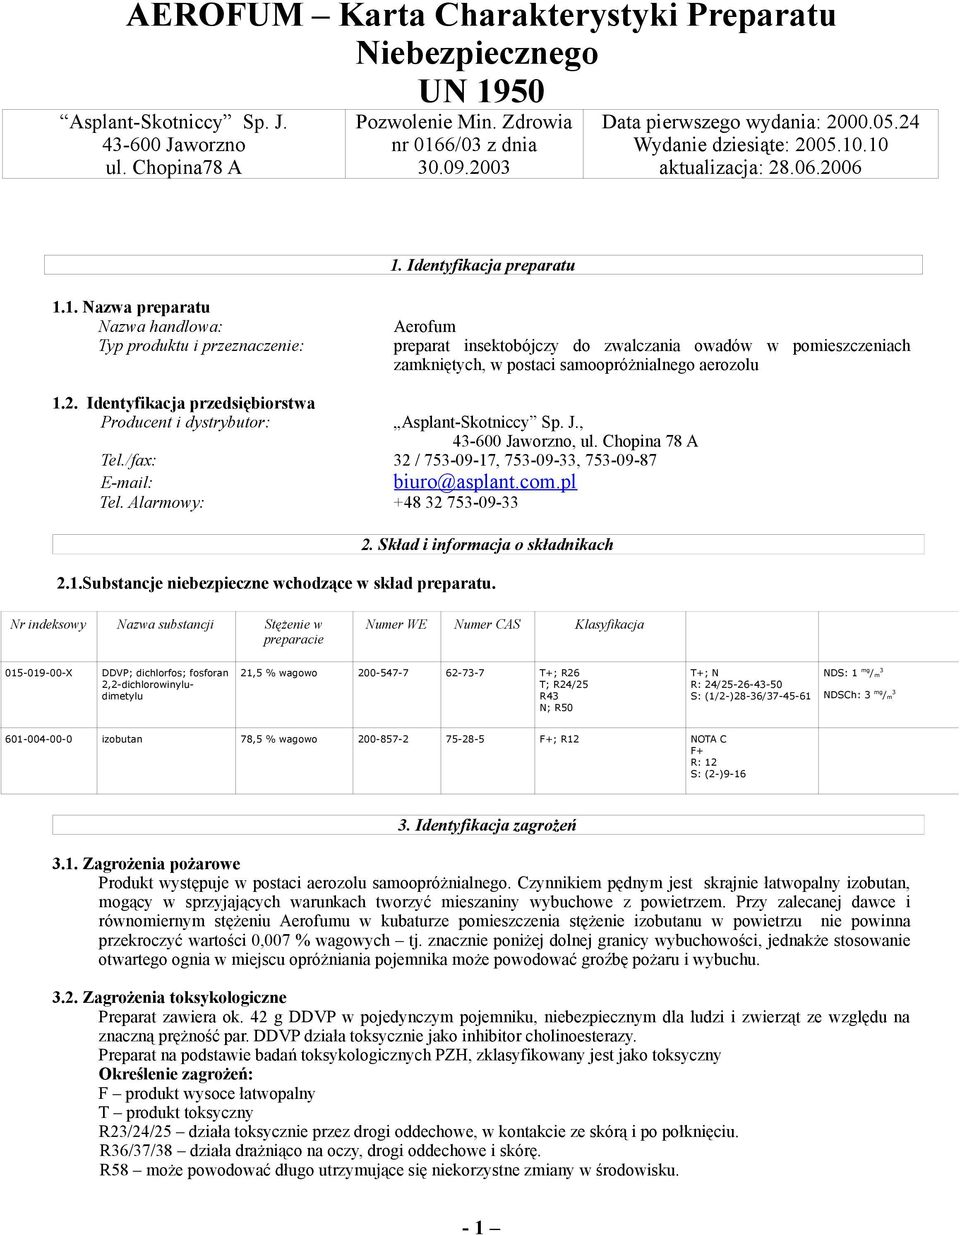 2. Identyfikacja przedsiębiorstwa Producent i dystrybutor: Asplant-Skotniccy Sp. J., 43-600 Jaworzno, ul. Chopina 78 A Tel./fax: 32 / 753-09-17, 753-09-33, 753-09-87 E-mail: biuro@asplant.com.pl Tel.